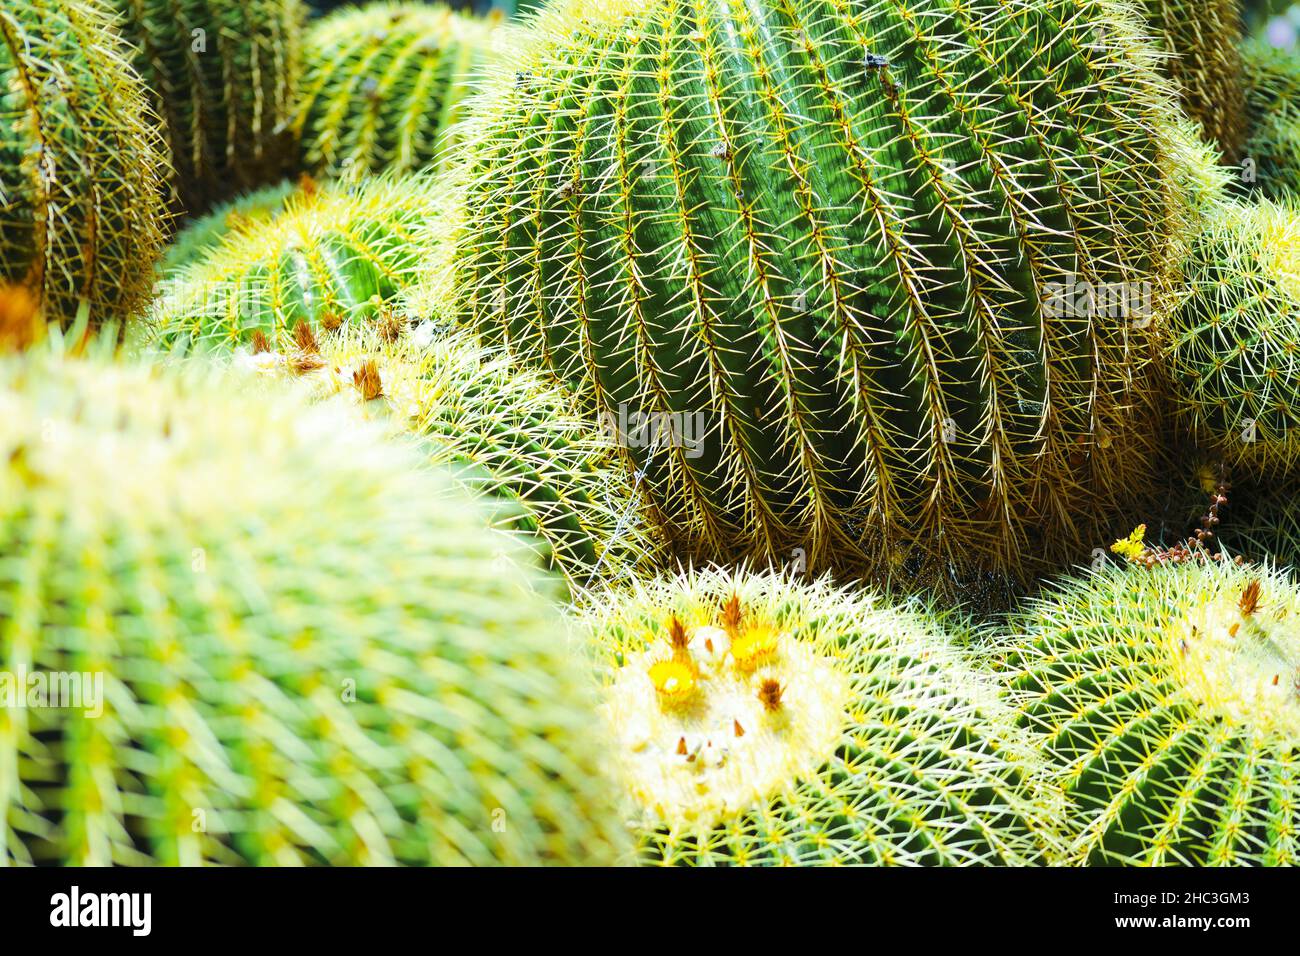 Round Cacti in Huntington Gardens Arboretum, Los Angeles, California Stock Photo